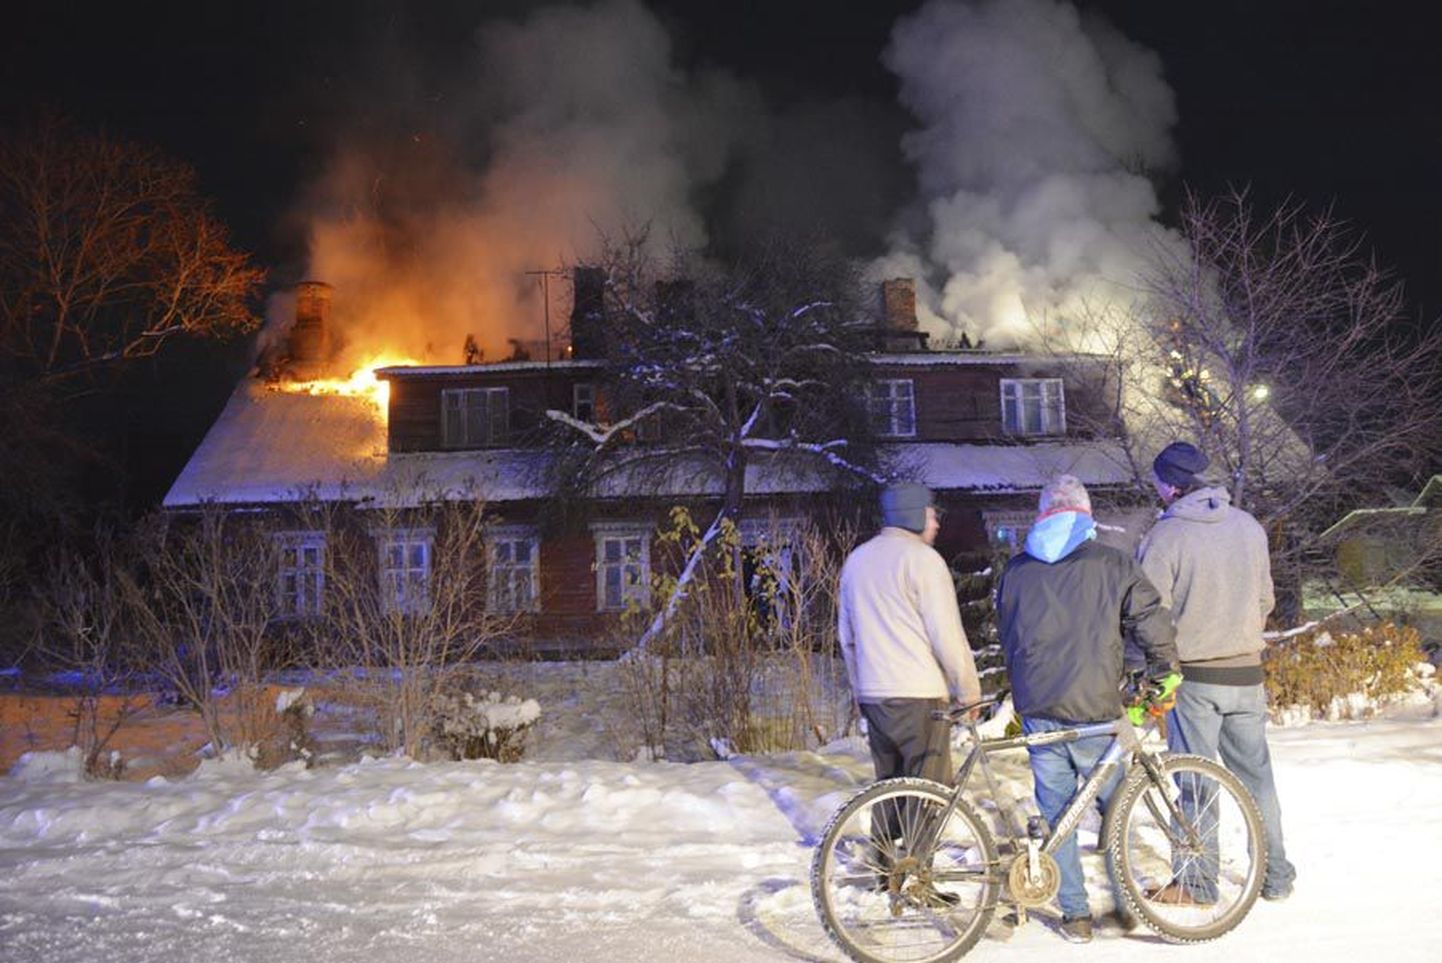 Novembri keskel põles Mõisakülas Raudtee tänaval seisev tühi maja suure leegiga ning päästjad pidid tunde töötama, et põlengule piir panna.